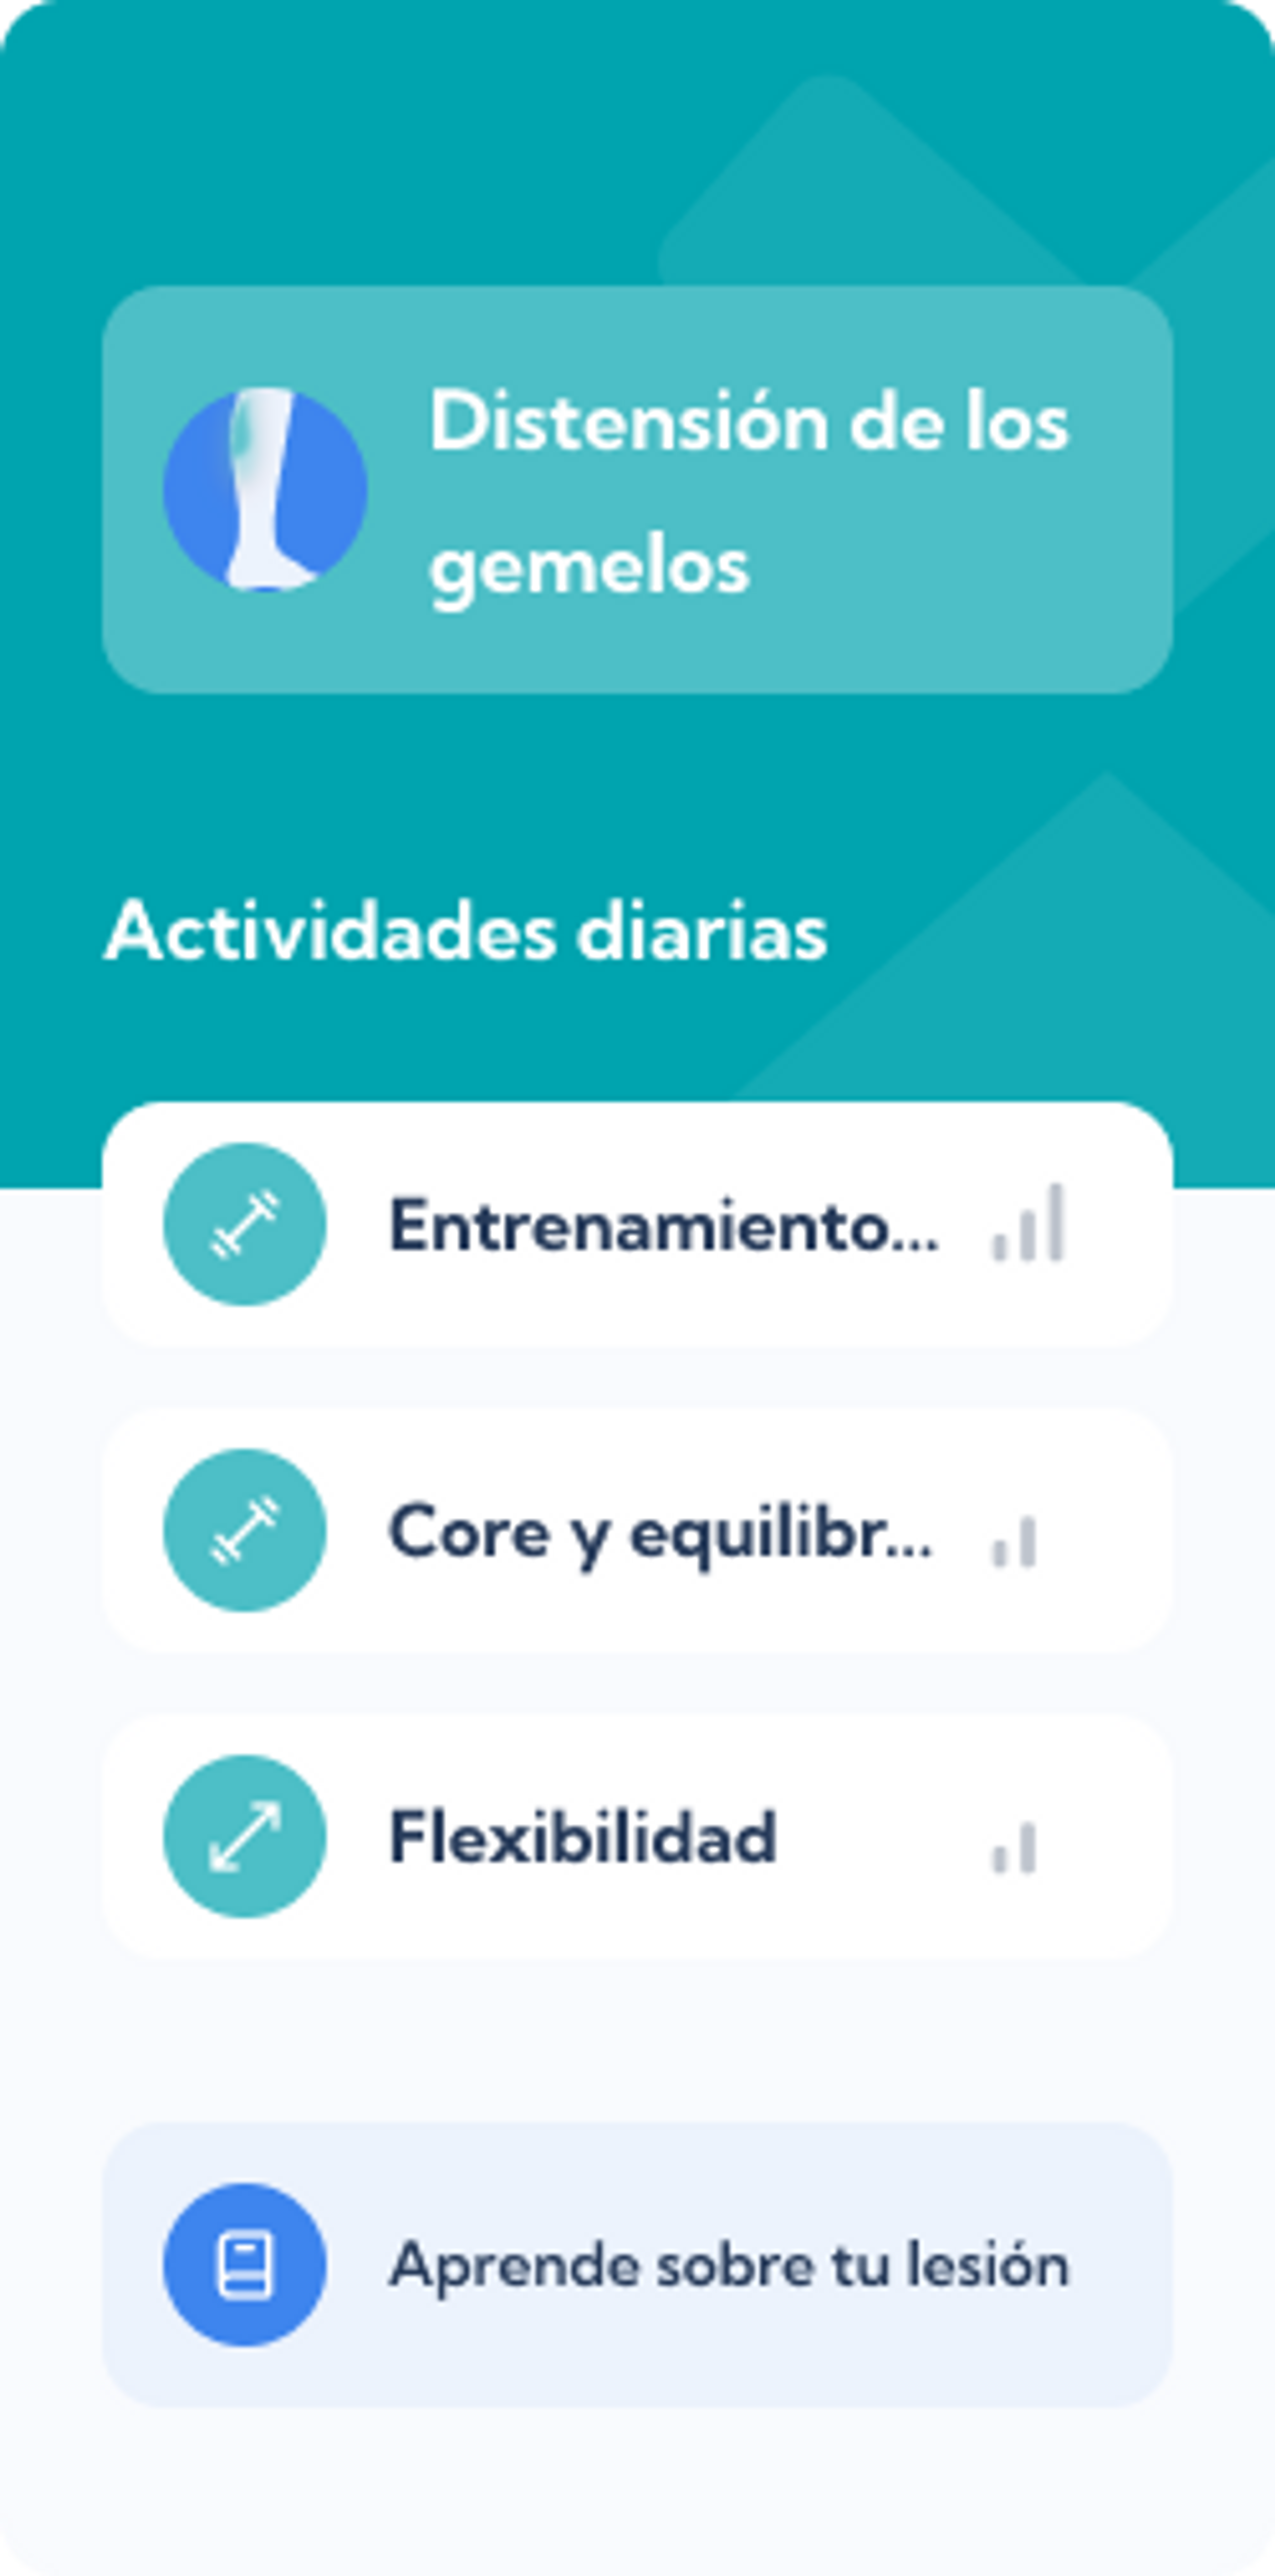 Plan de Distensión de los gemelos – Dashboard overview of the Exakt Health app